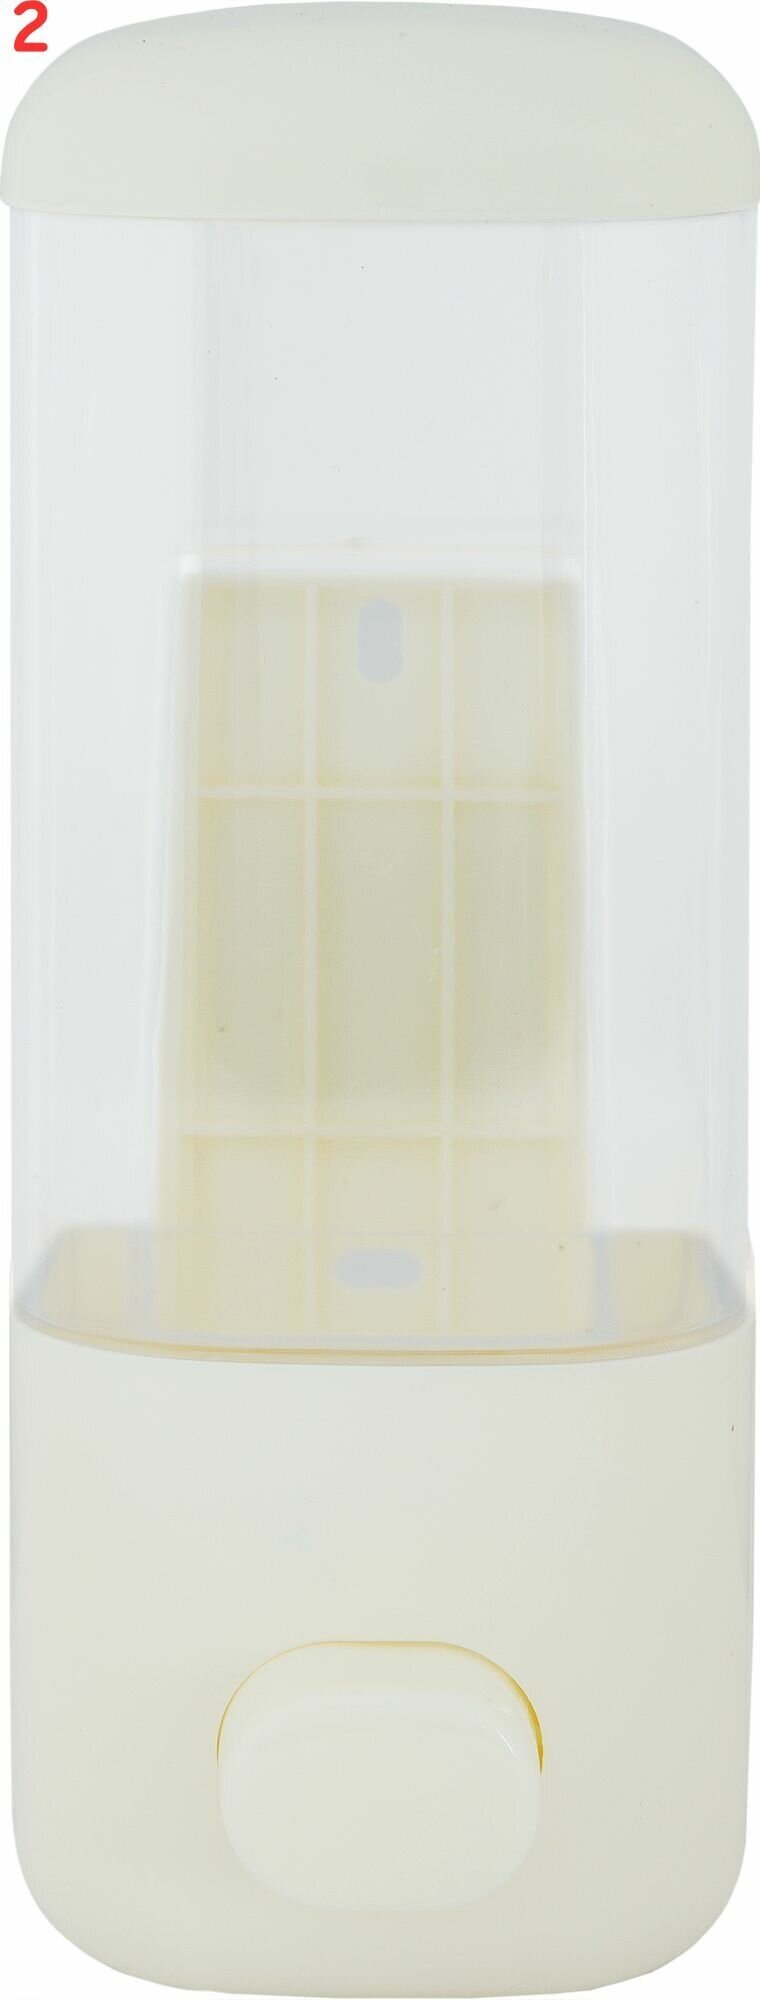 Дозатор для жидкого мыла Mr Penguin подвесной 400 мл пластик цвет белый (2 шт.)